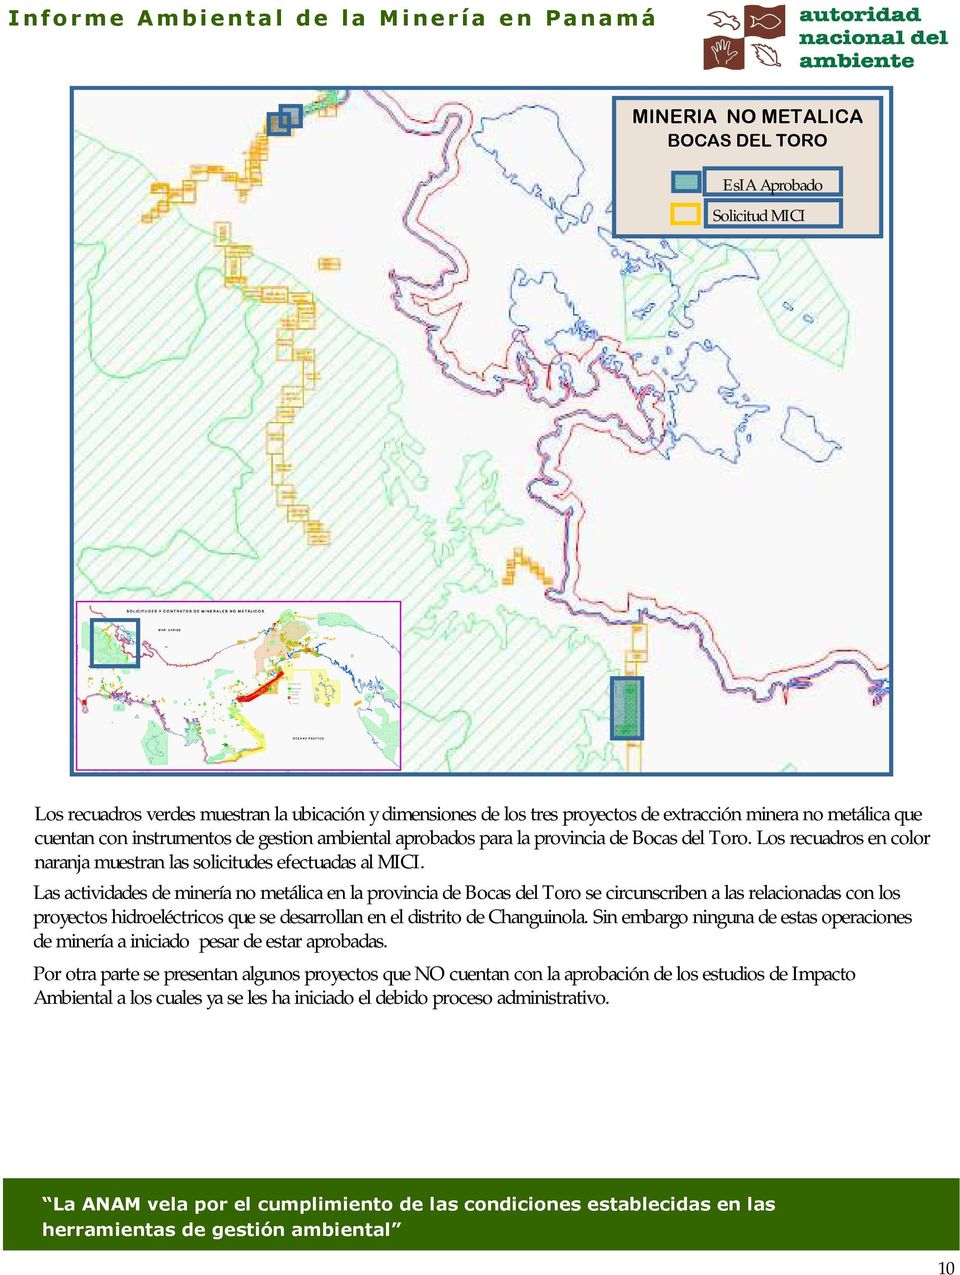 Las actividades de minería no metálica en la provincia de Bocas del Toro se circunscriben a las relacionadas con los proyectos hidroeléctricos que se desarrollan en el distrito de Changuinola.